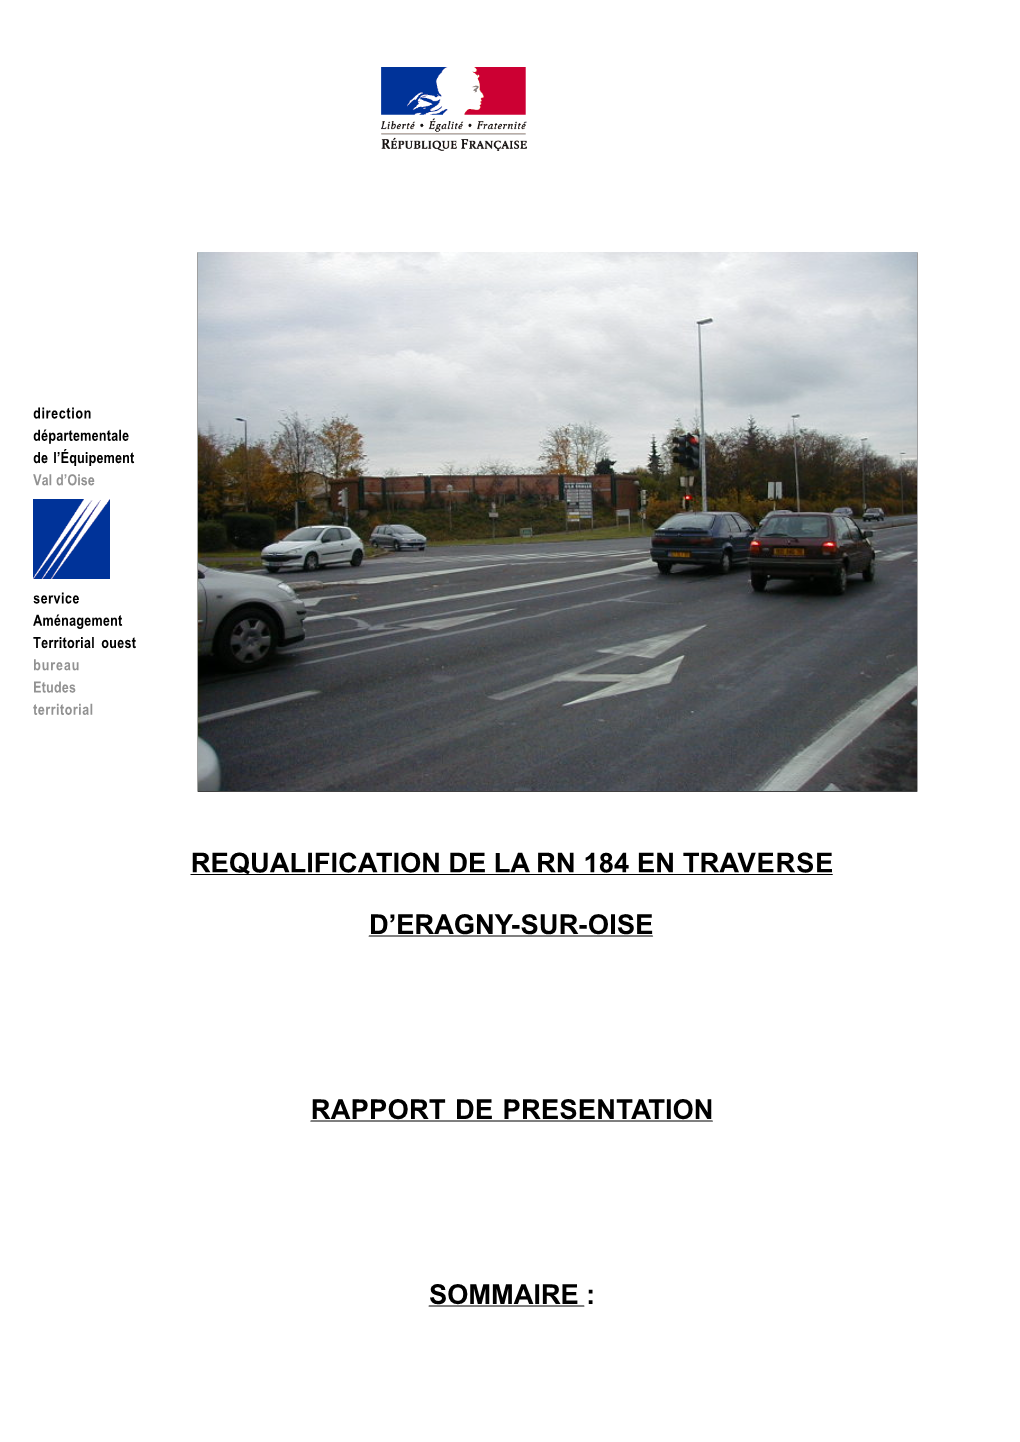 Requalification De La Rn 184 En Traverse D'eragny-Sur